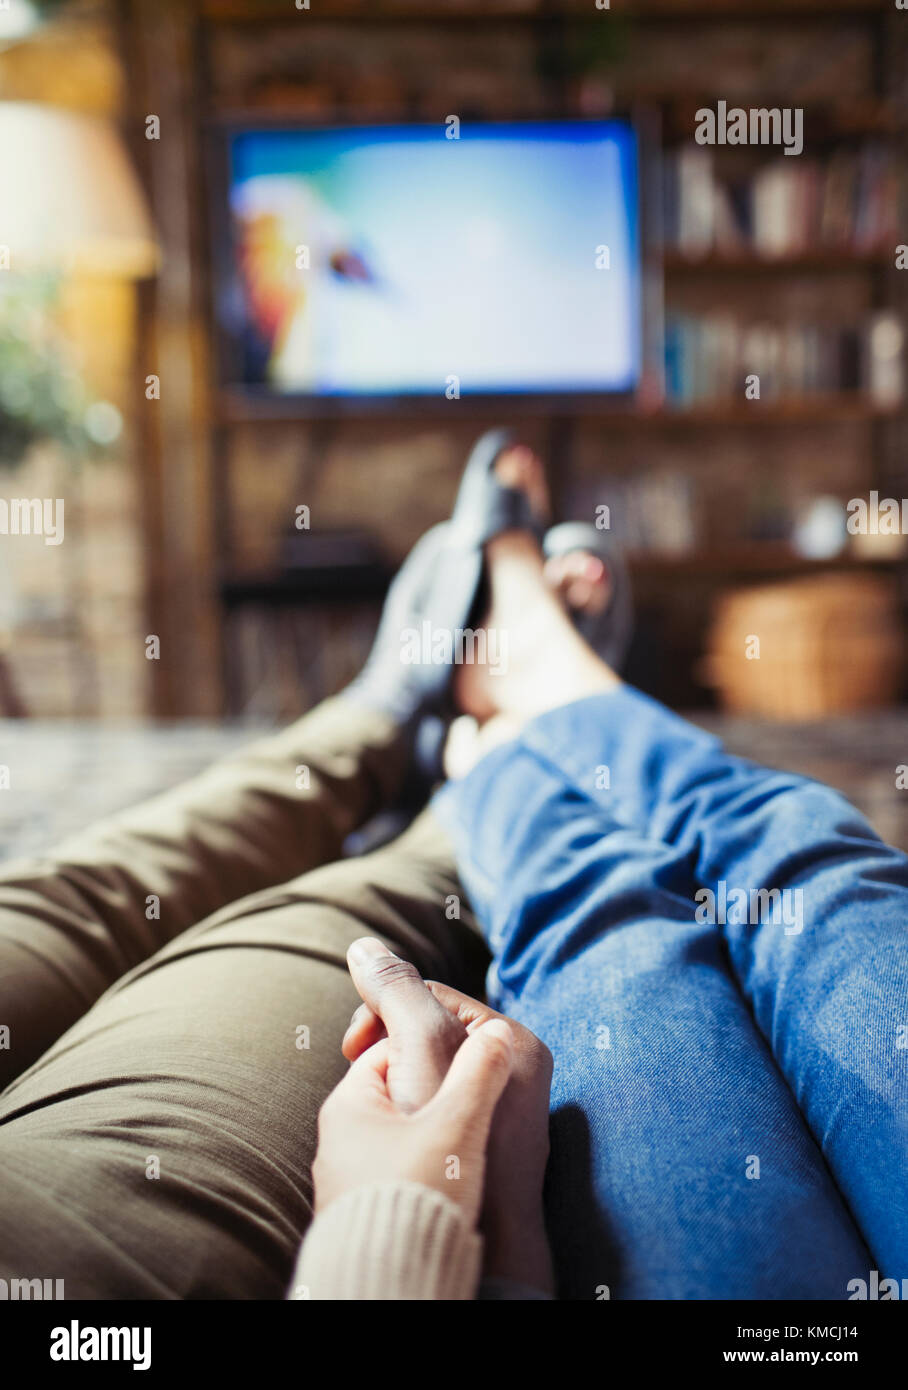 Perspectiva personal pareja cariñosa con las manos mirando la televisión en vivo habitación Foto de stock